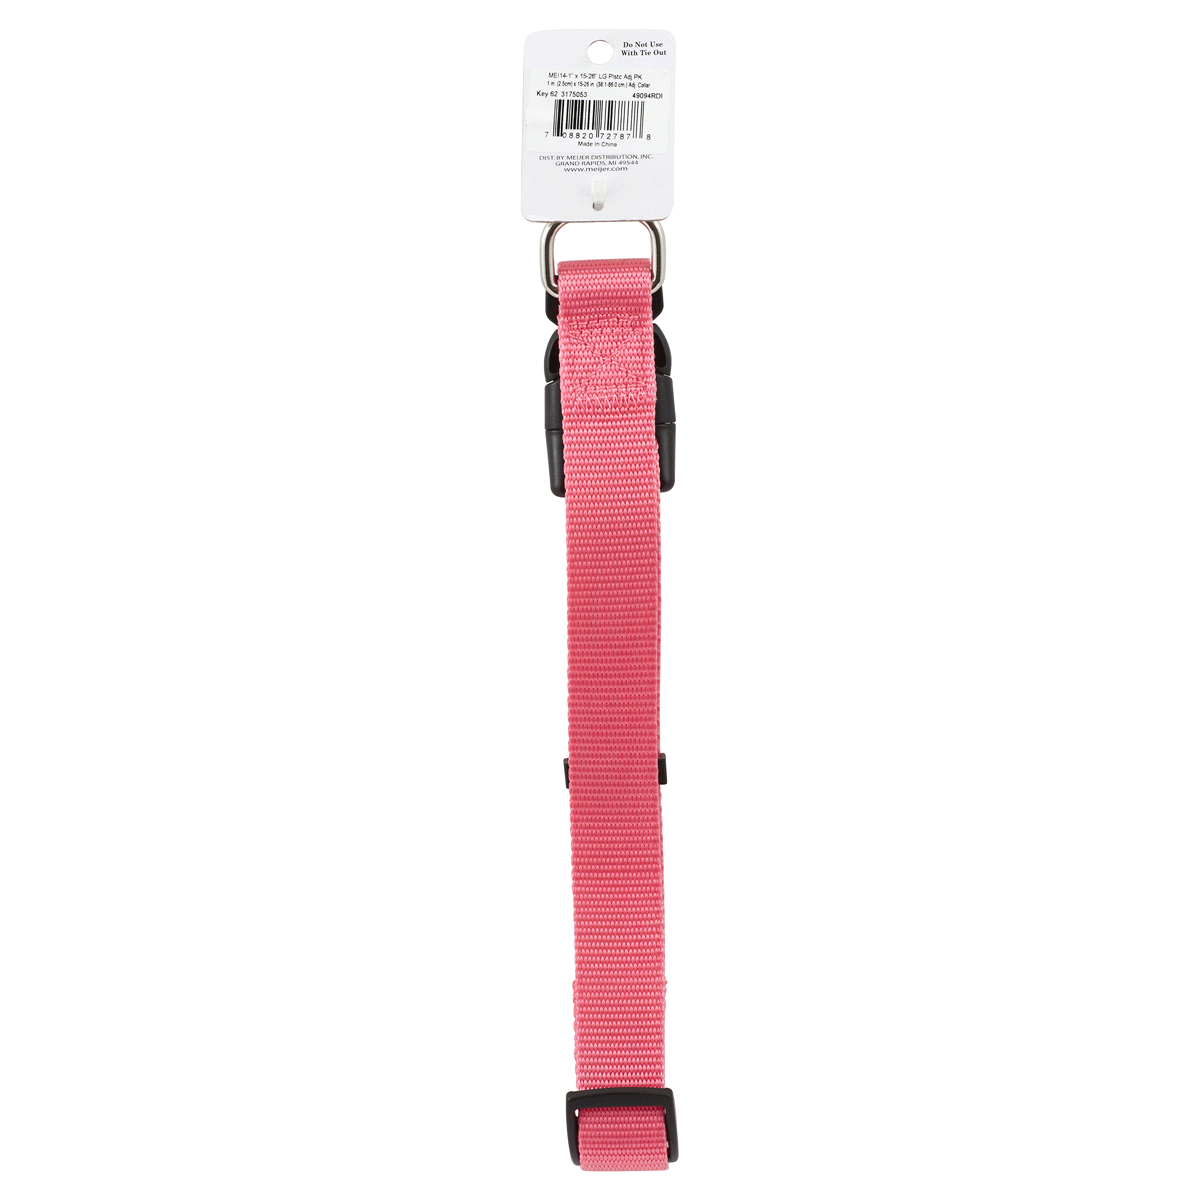 Meijer Dog Collar, Adjustable, Pink, Large LG | Shipt